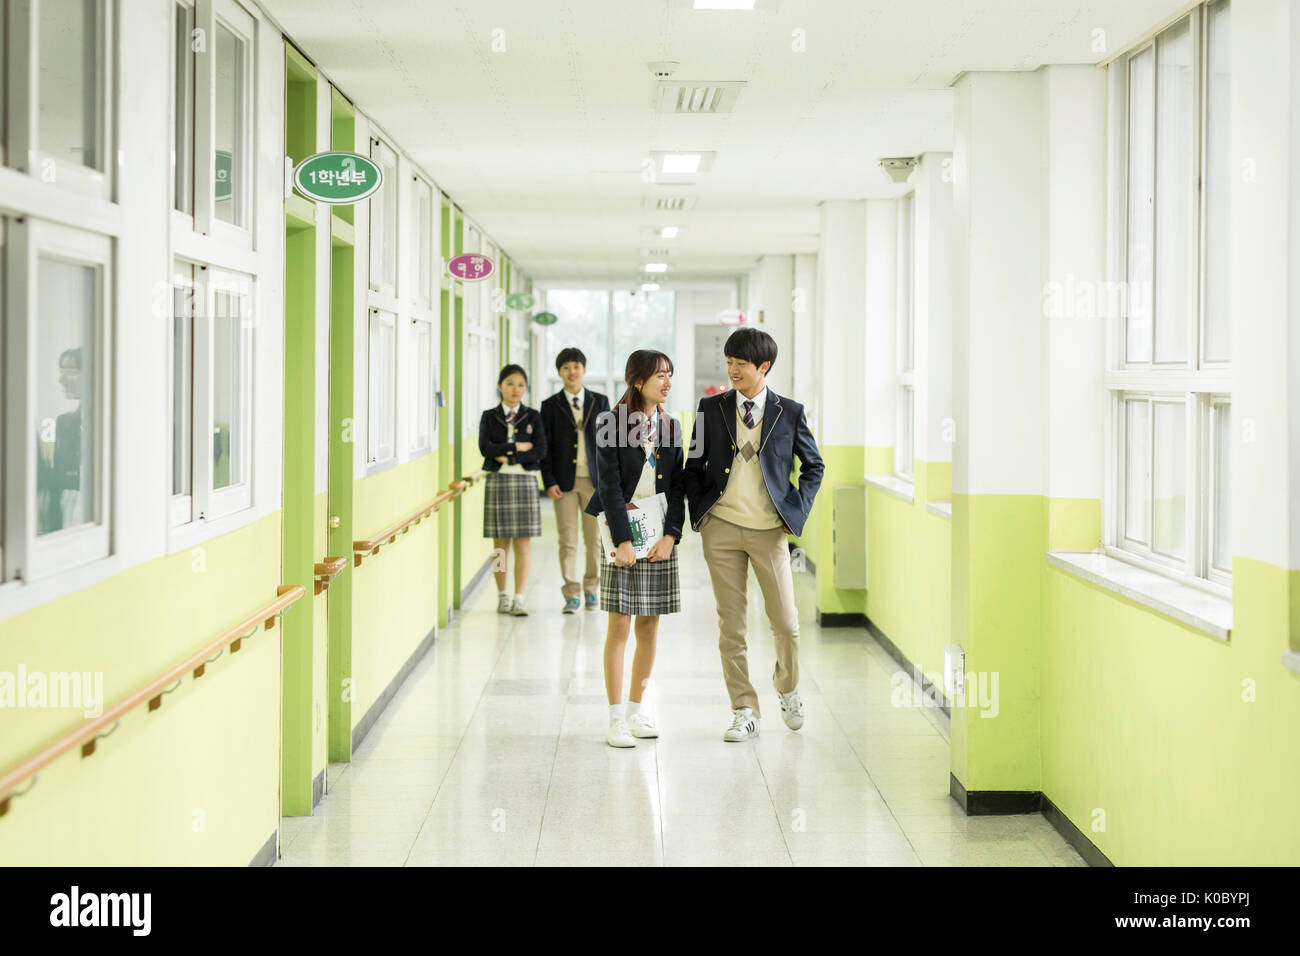 Les élèves de l'école sourire marche à couloir à l'école Banque D'Images